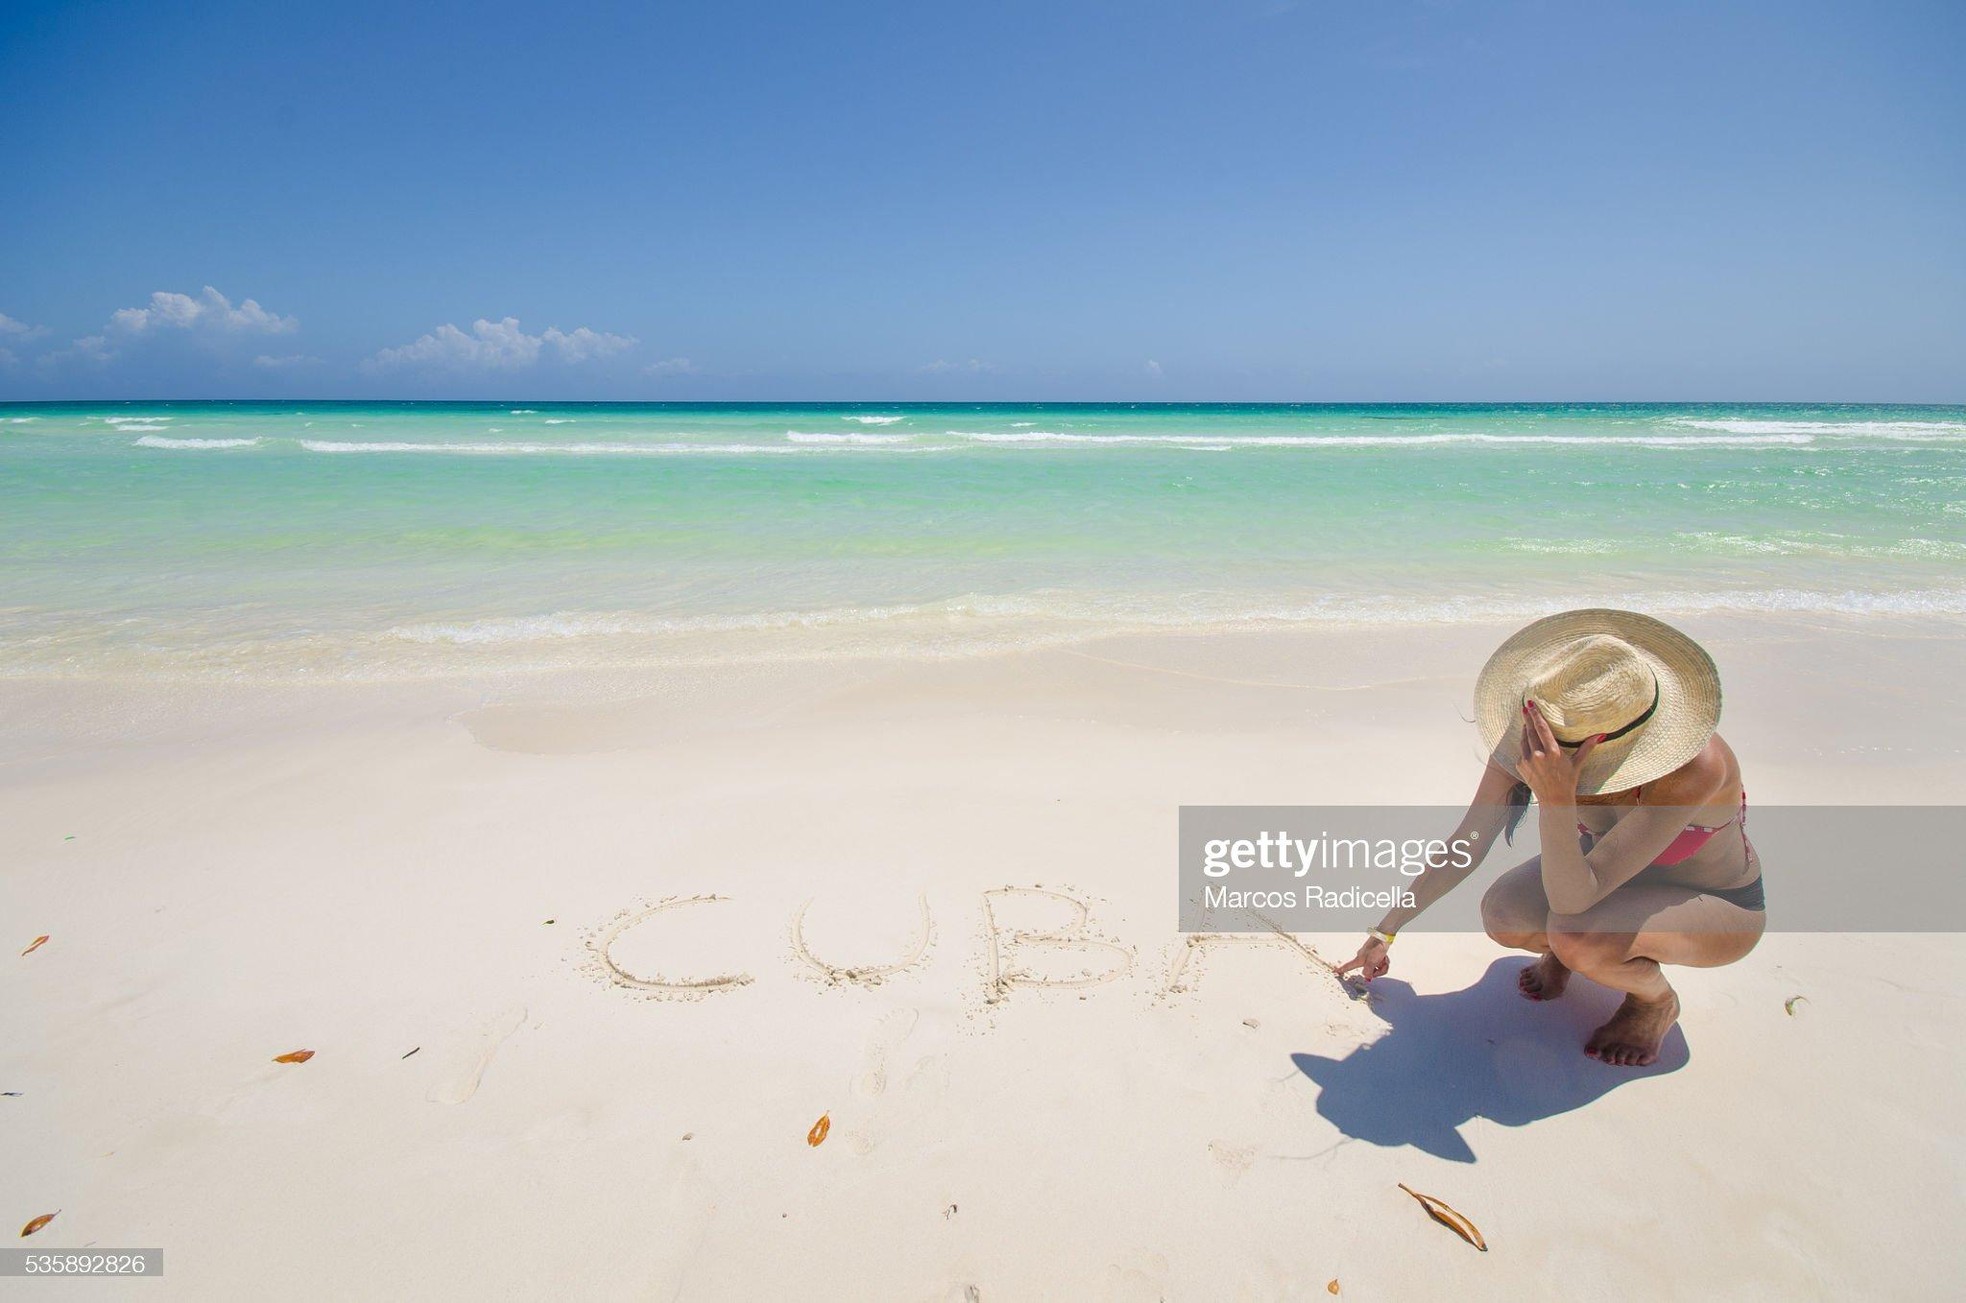 Những bãi biển đẹp nhất thế giới, được ví như thiên đường ở Cuba - Ảnh 7.